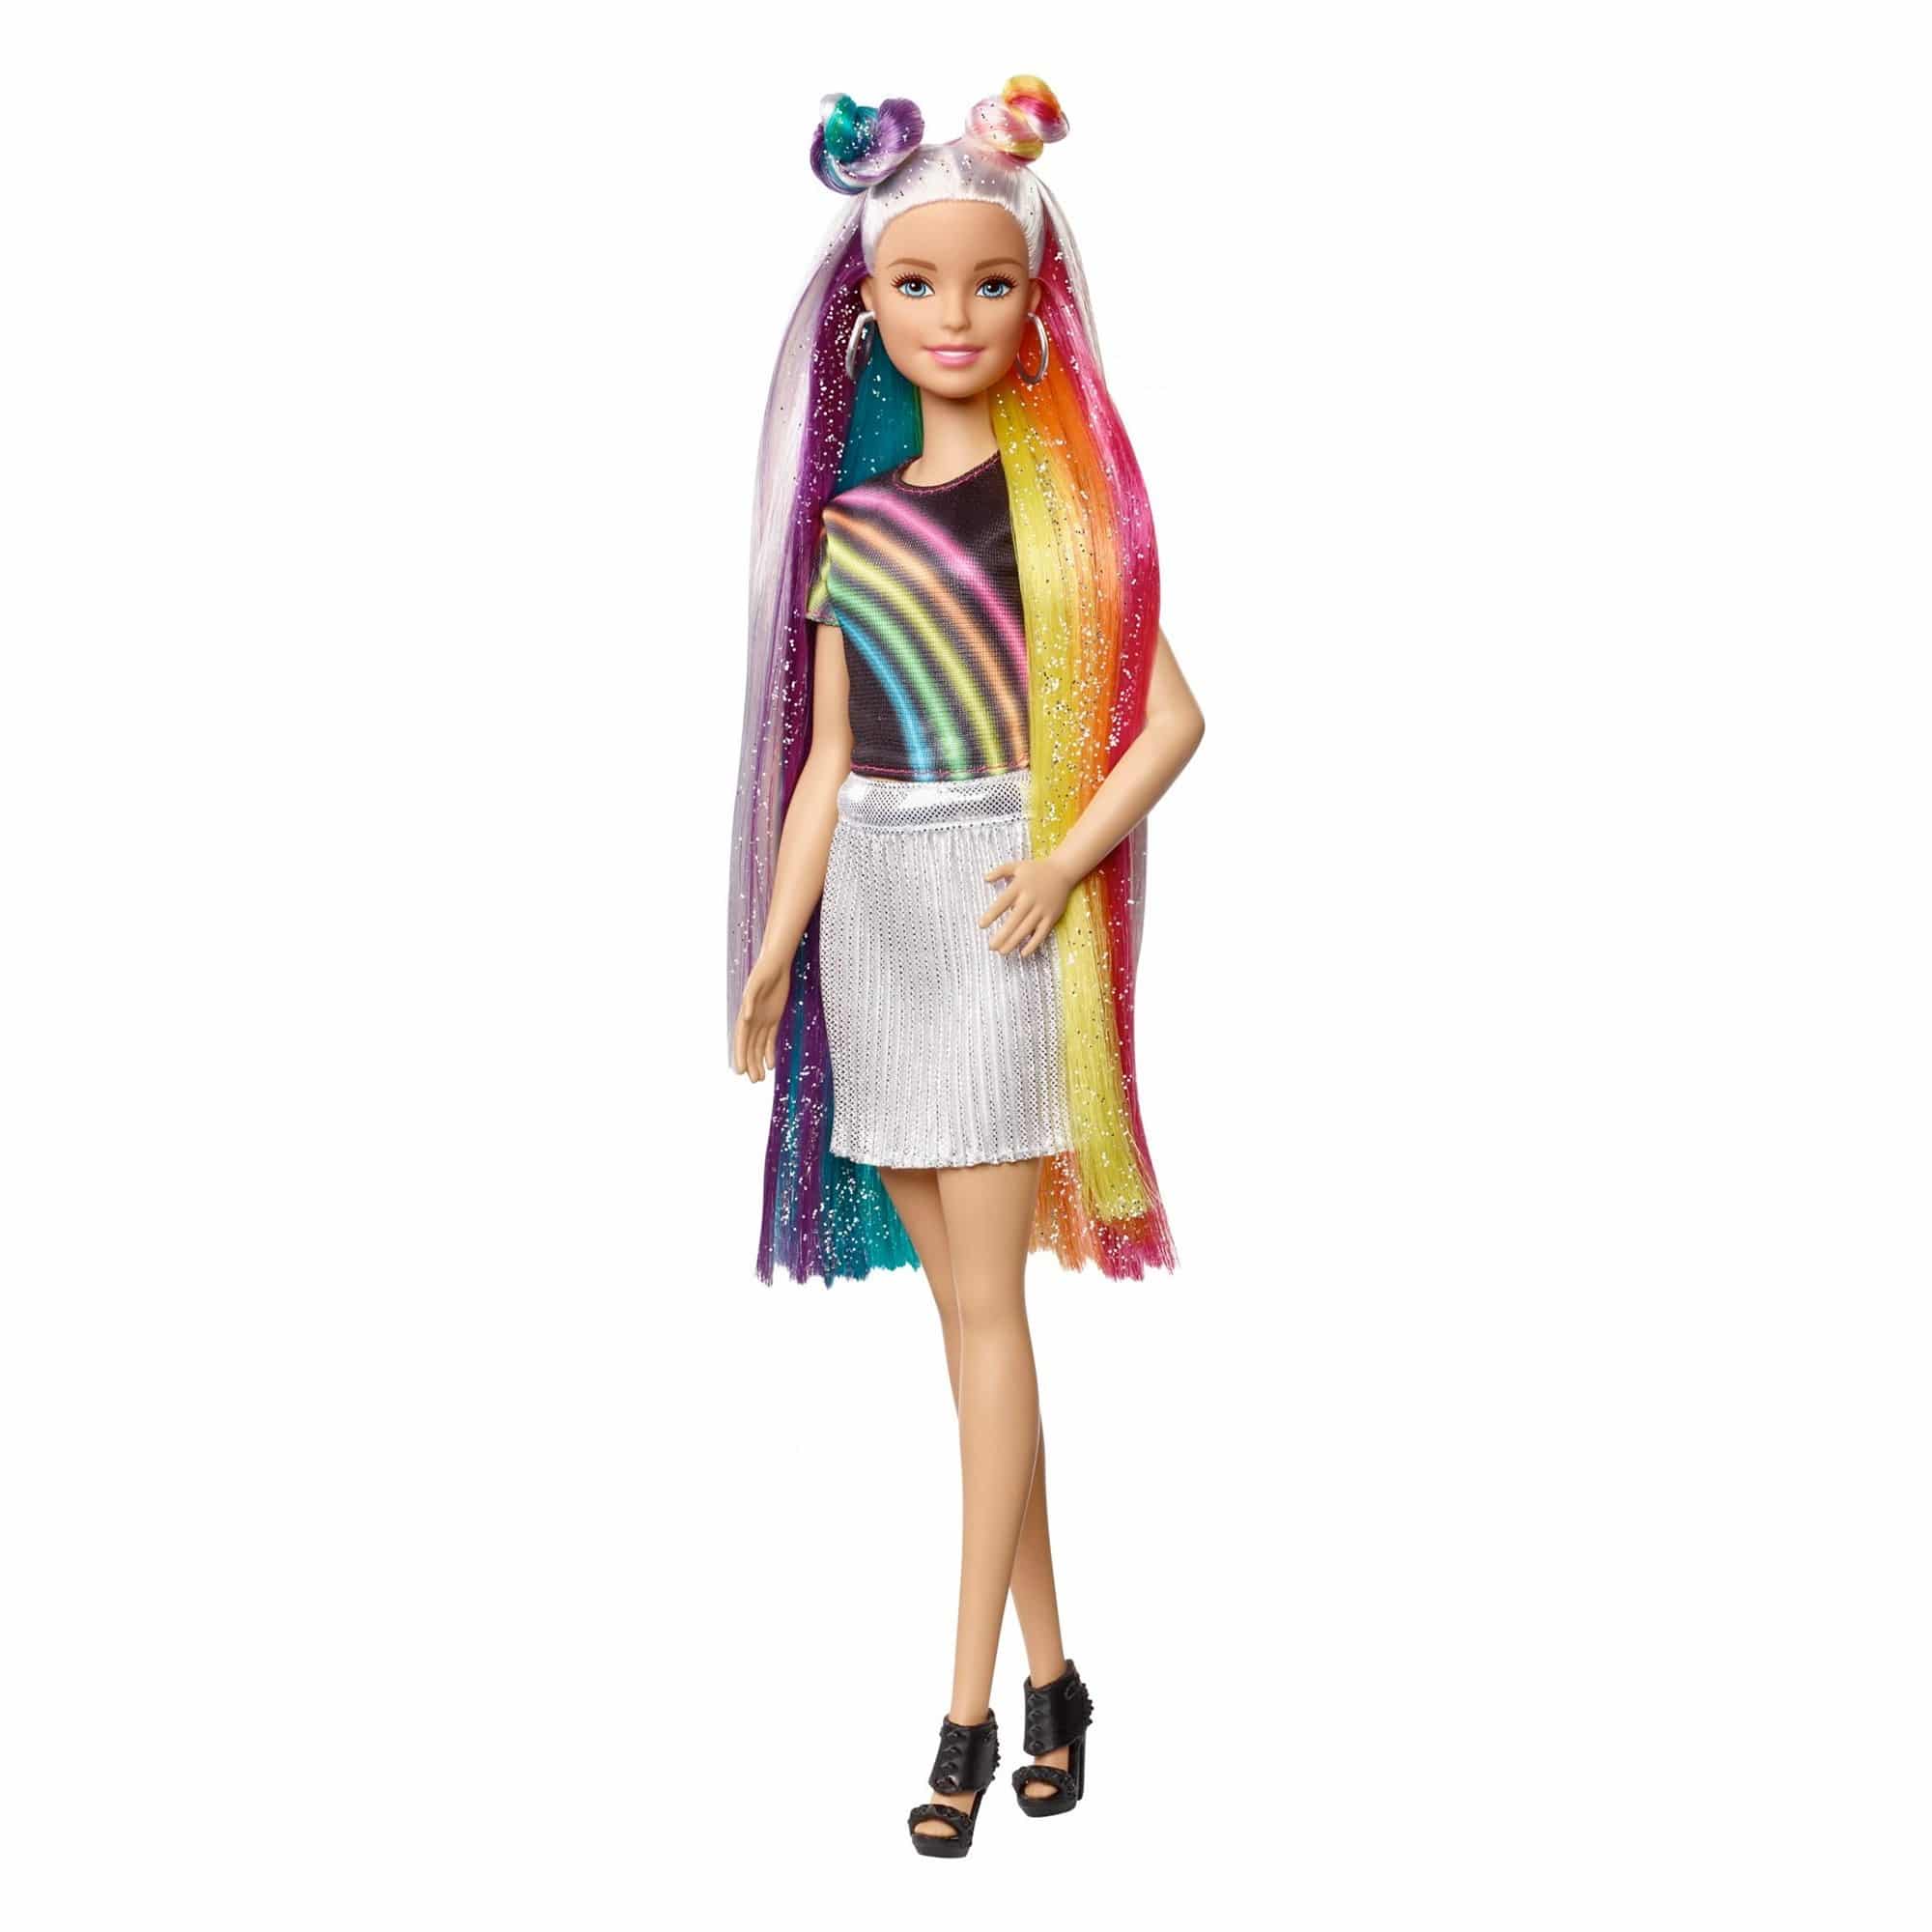 Barbie - Rainbow Sparkle Hair Doll